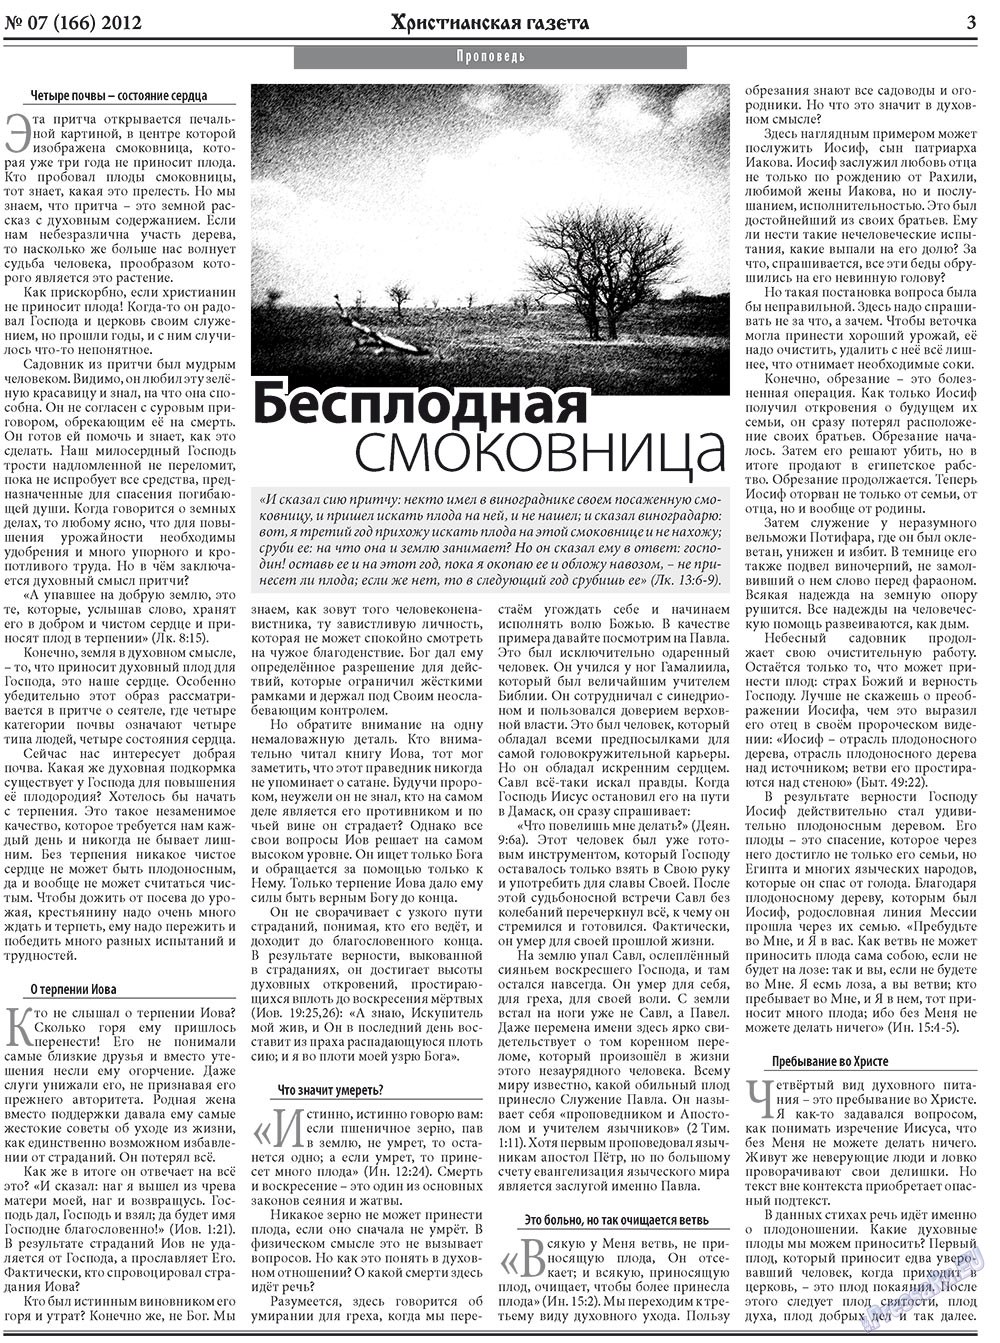 Христианская газета, газета. 2012 №7 стр.3